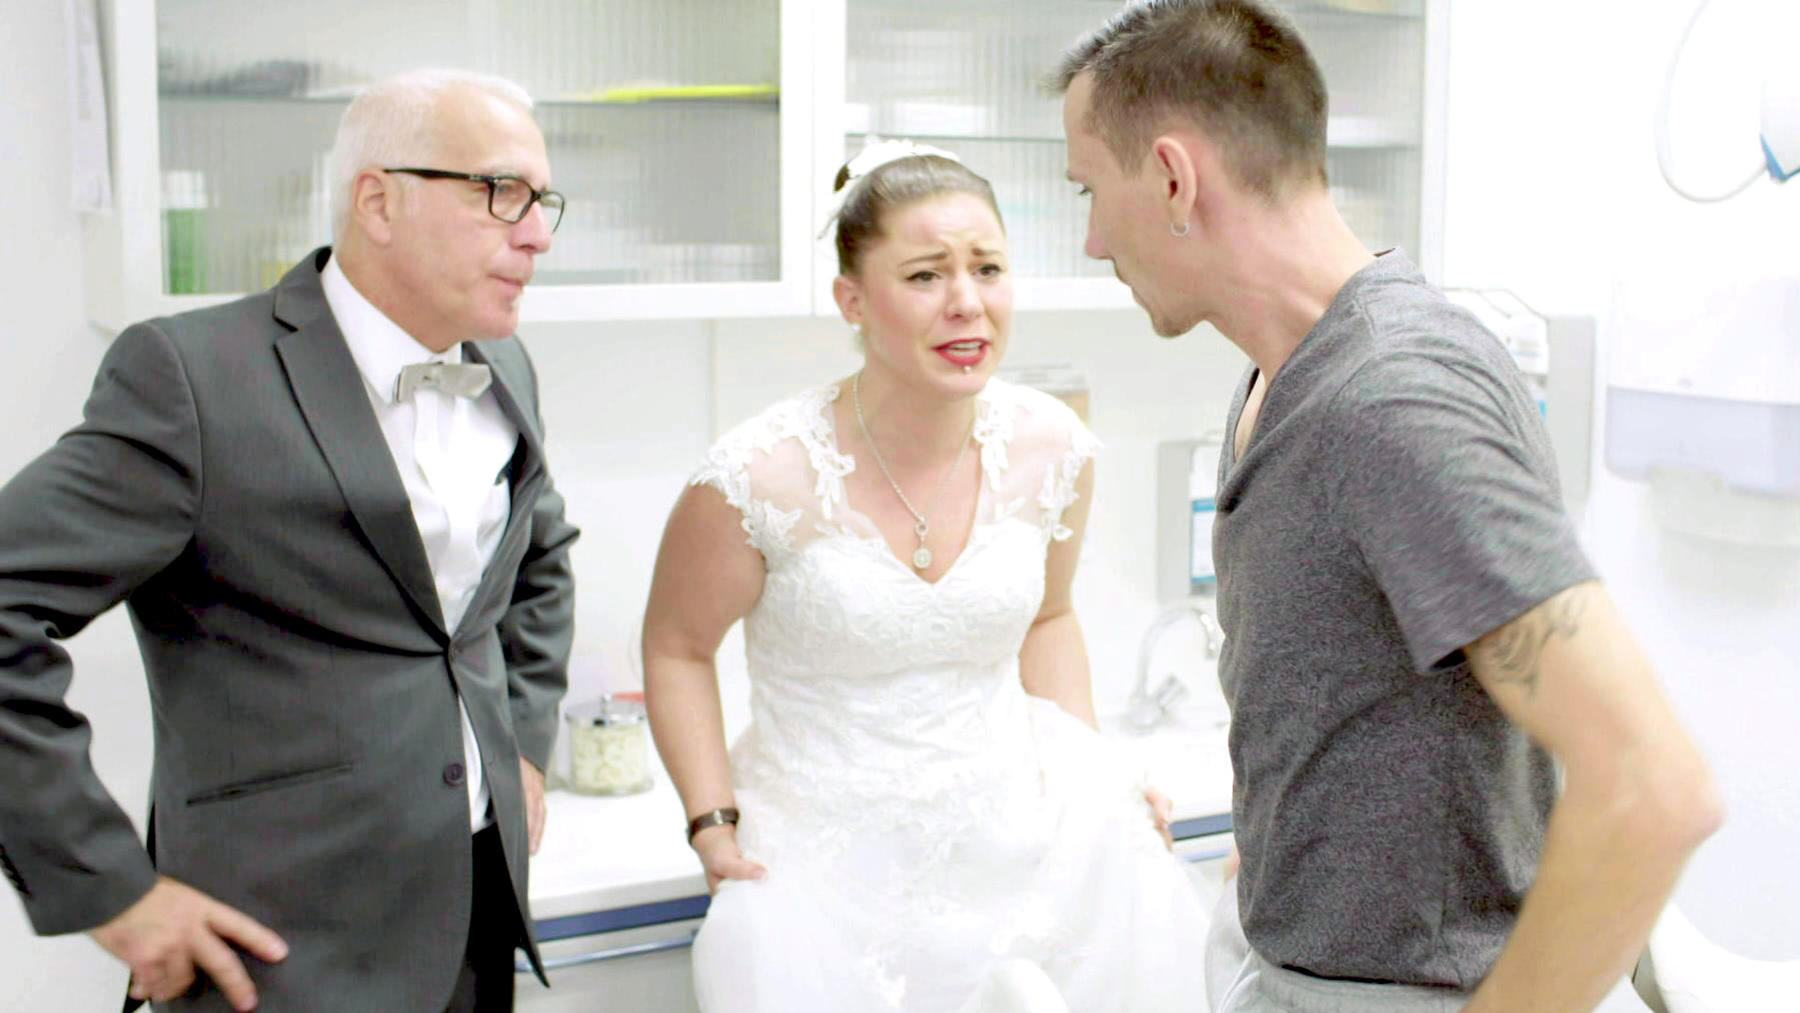 Bräutigam landet am Hochzeitsmorgen im Krankenhaus